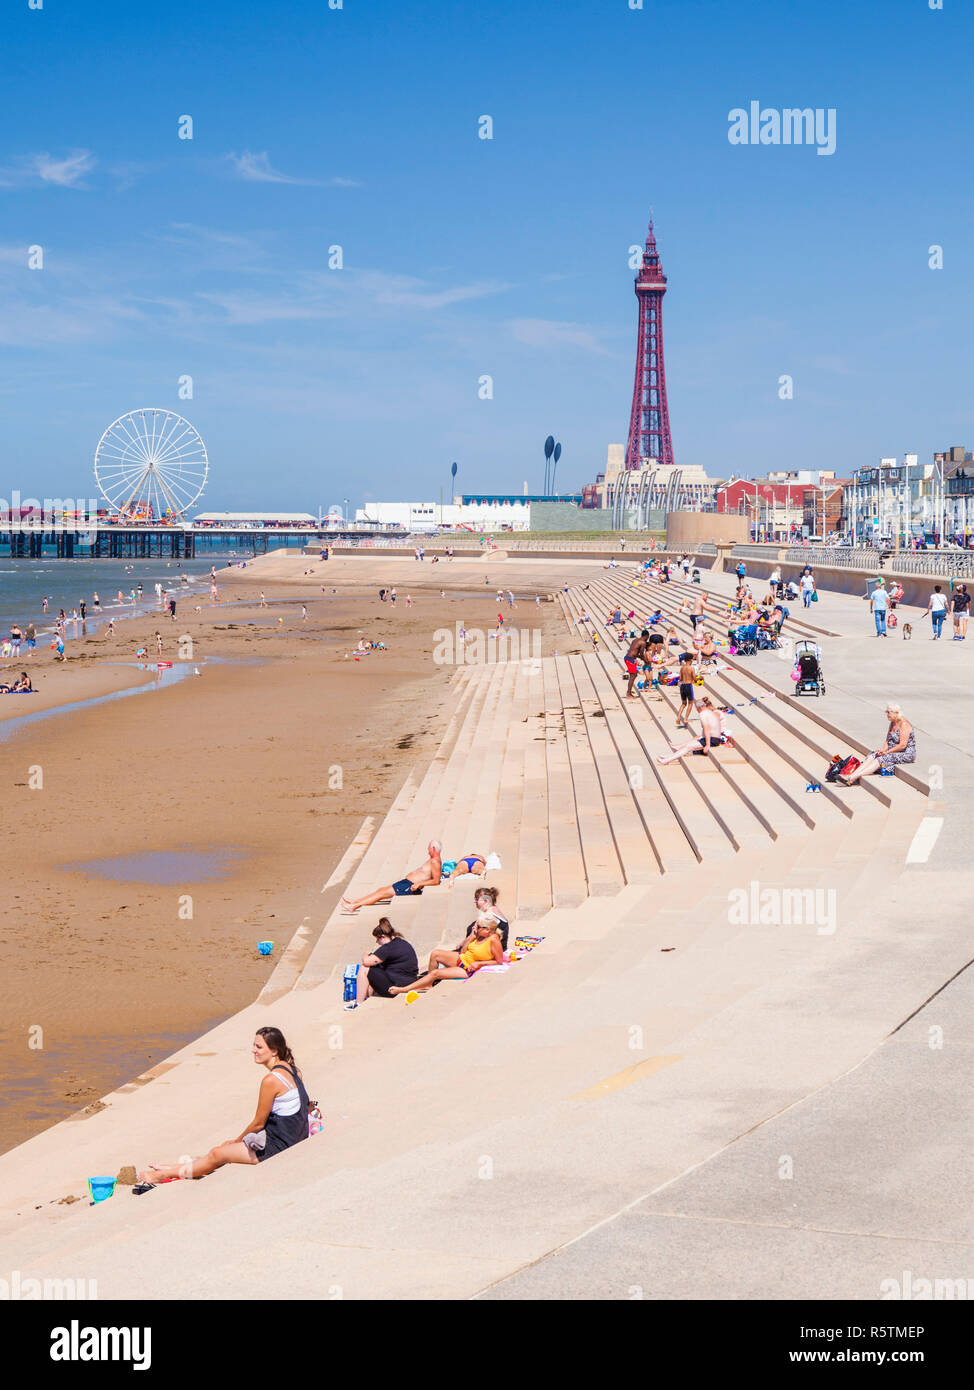 Menschen am Sandstrand bei Blackpool Großbritannien Strand Sommer Blackpool Tower Central Pier und neue Promenade, Blackpool Lancashire England UK GB Europa Stockfoto